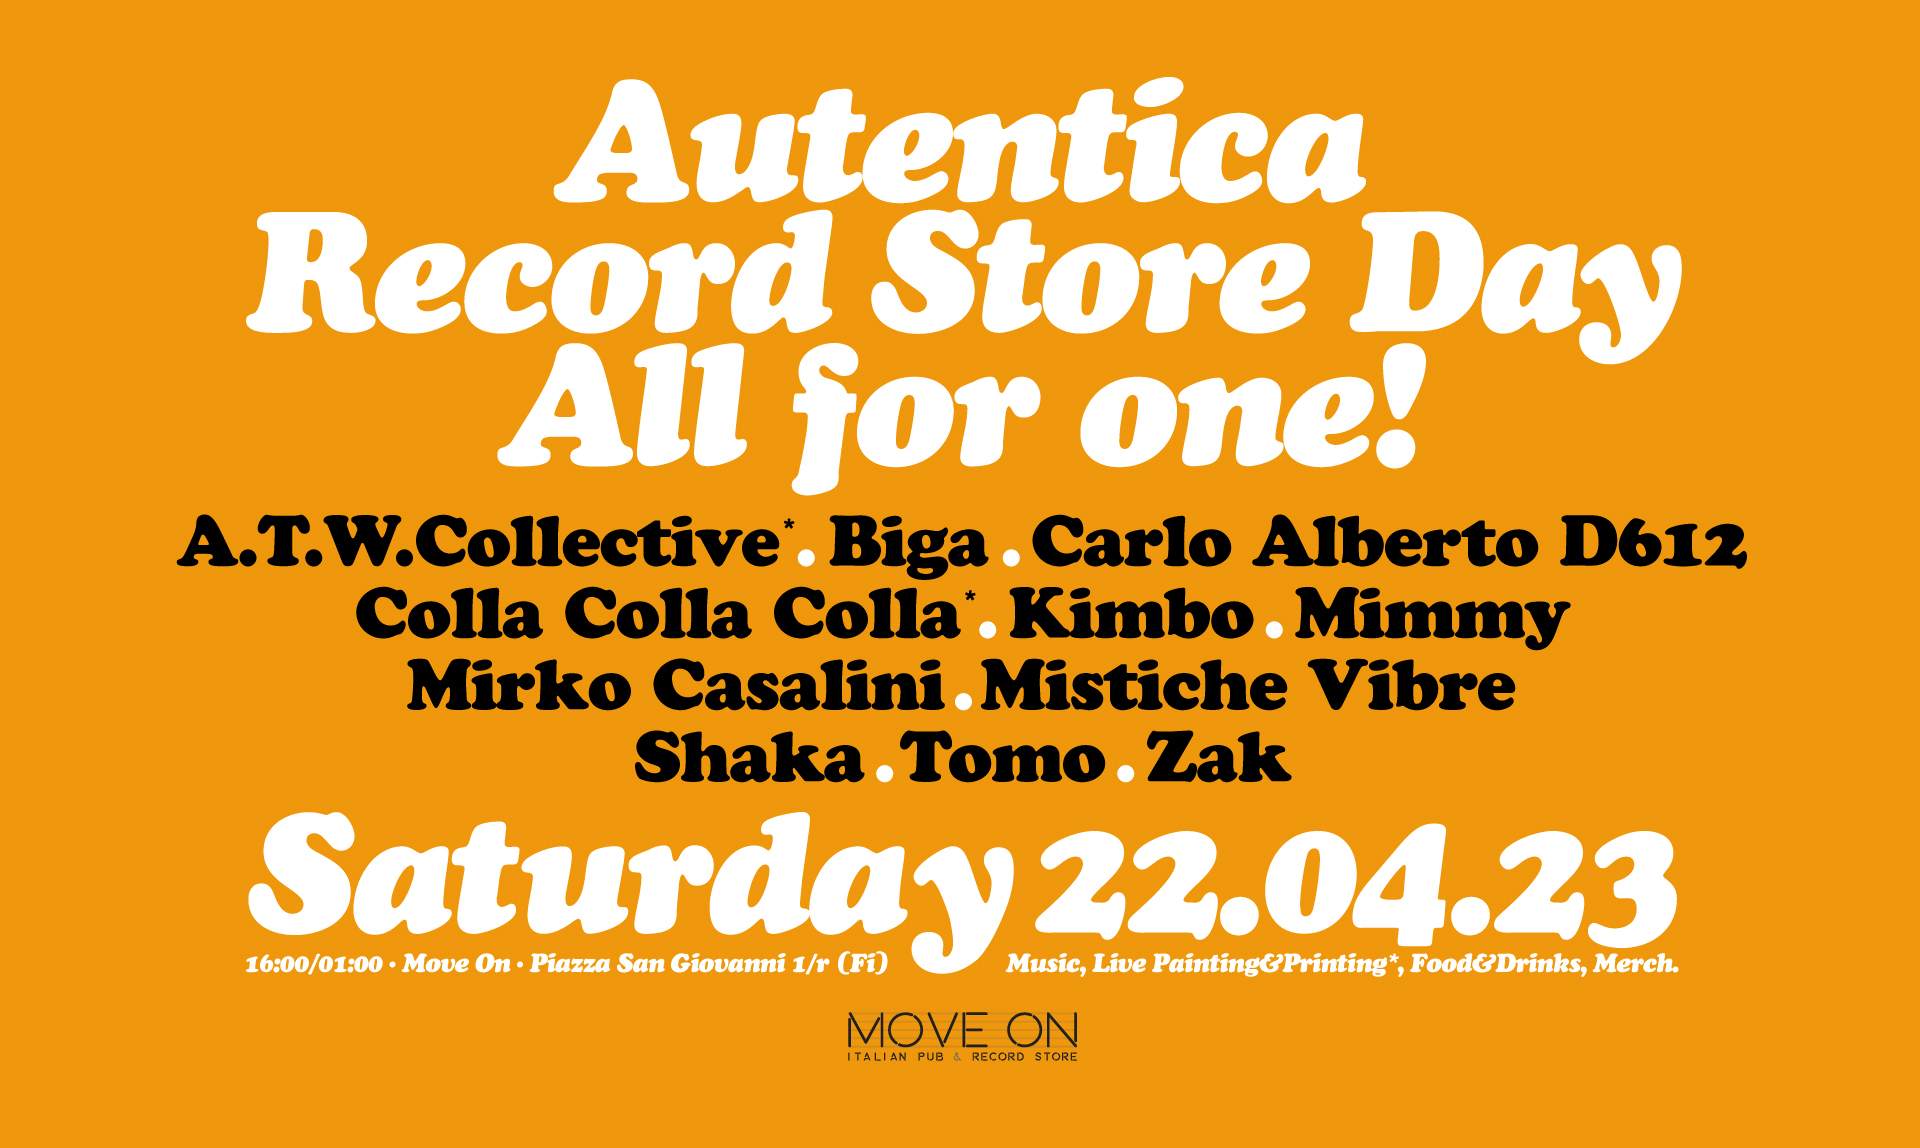 Autentica ALL FOR ONE! - Record Store Day - フライヤー表